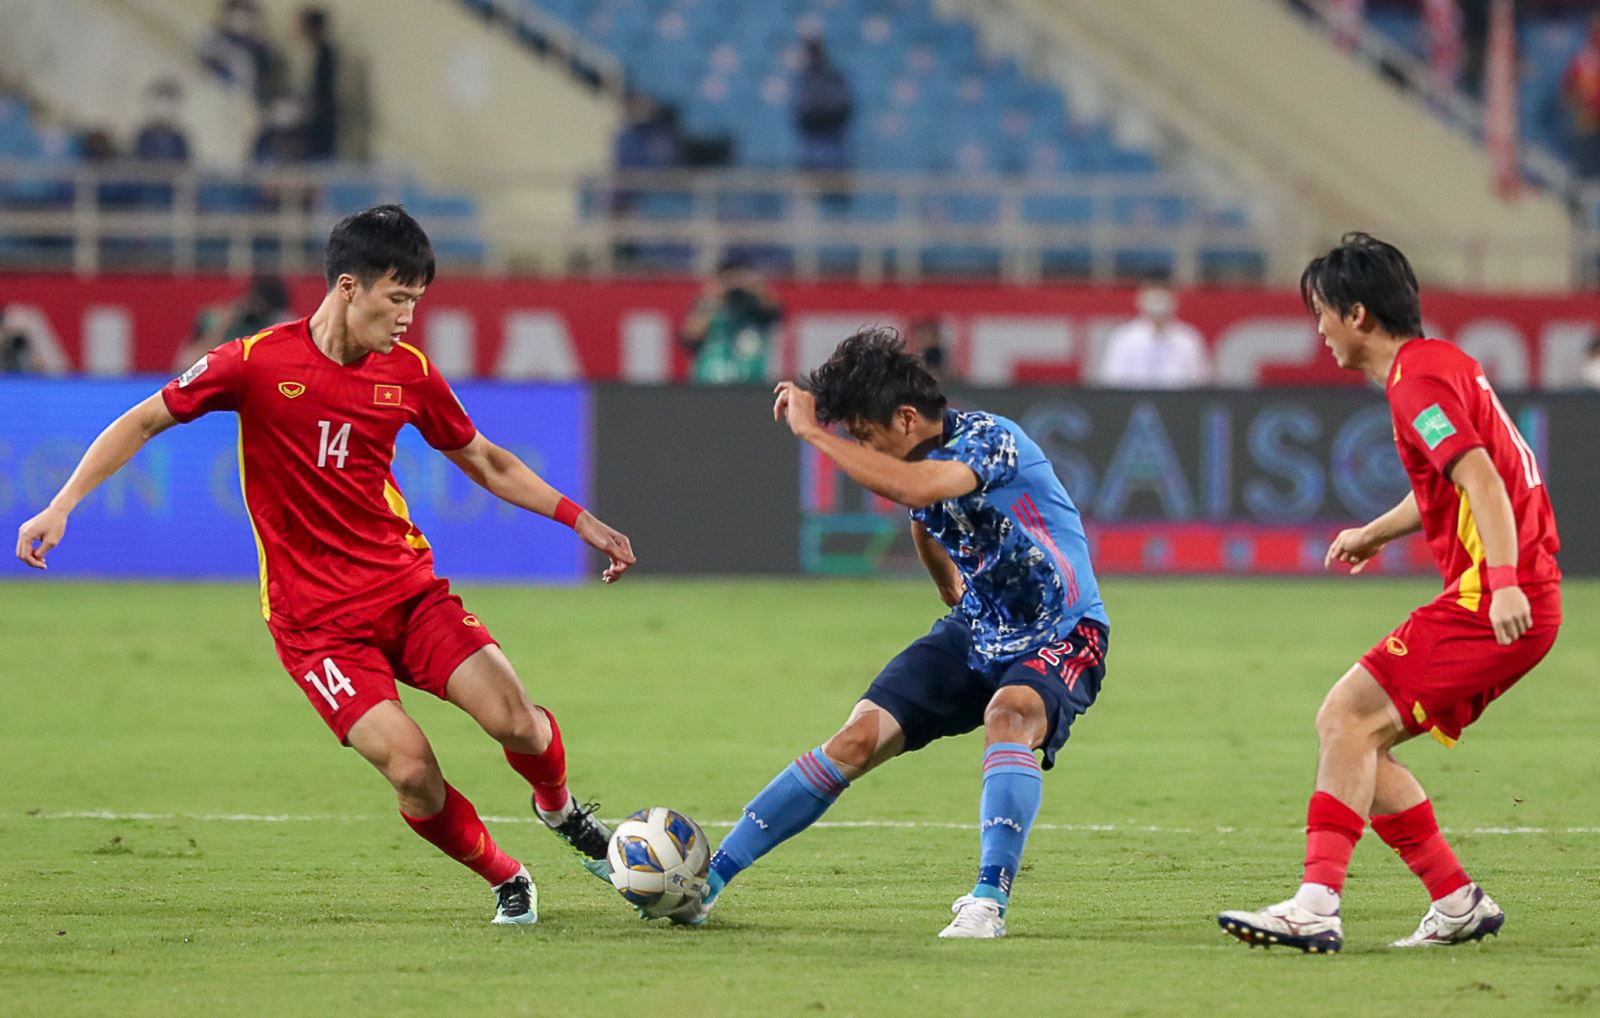 Hoàng Đức và Tuấn Anh được chờ đợi sẽ giúp tuyến giữa đội tuyển Việt Nam thăng hoa ở AFF Cup 2021. Ảnh: Hoàng Linh